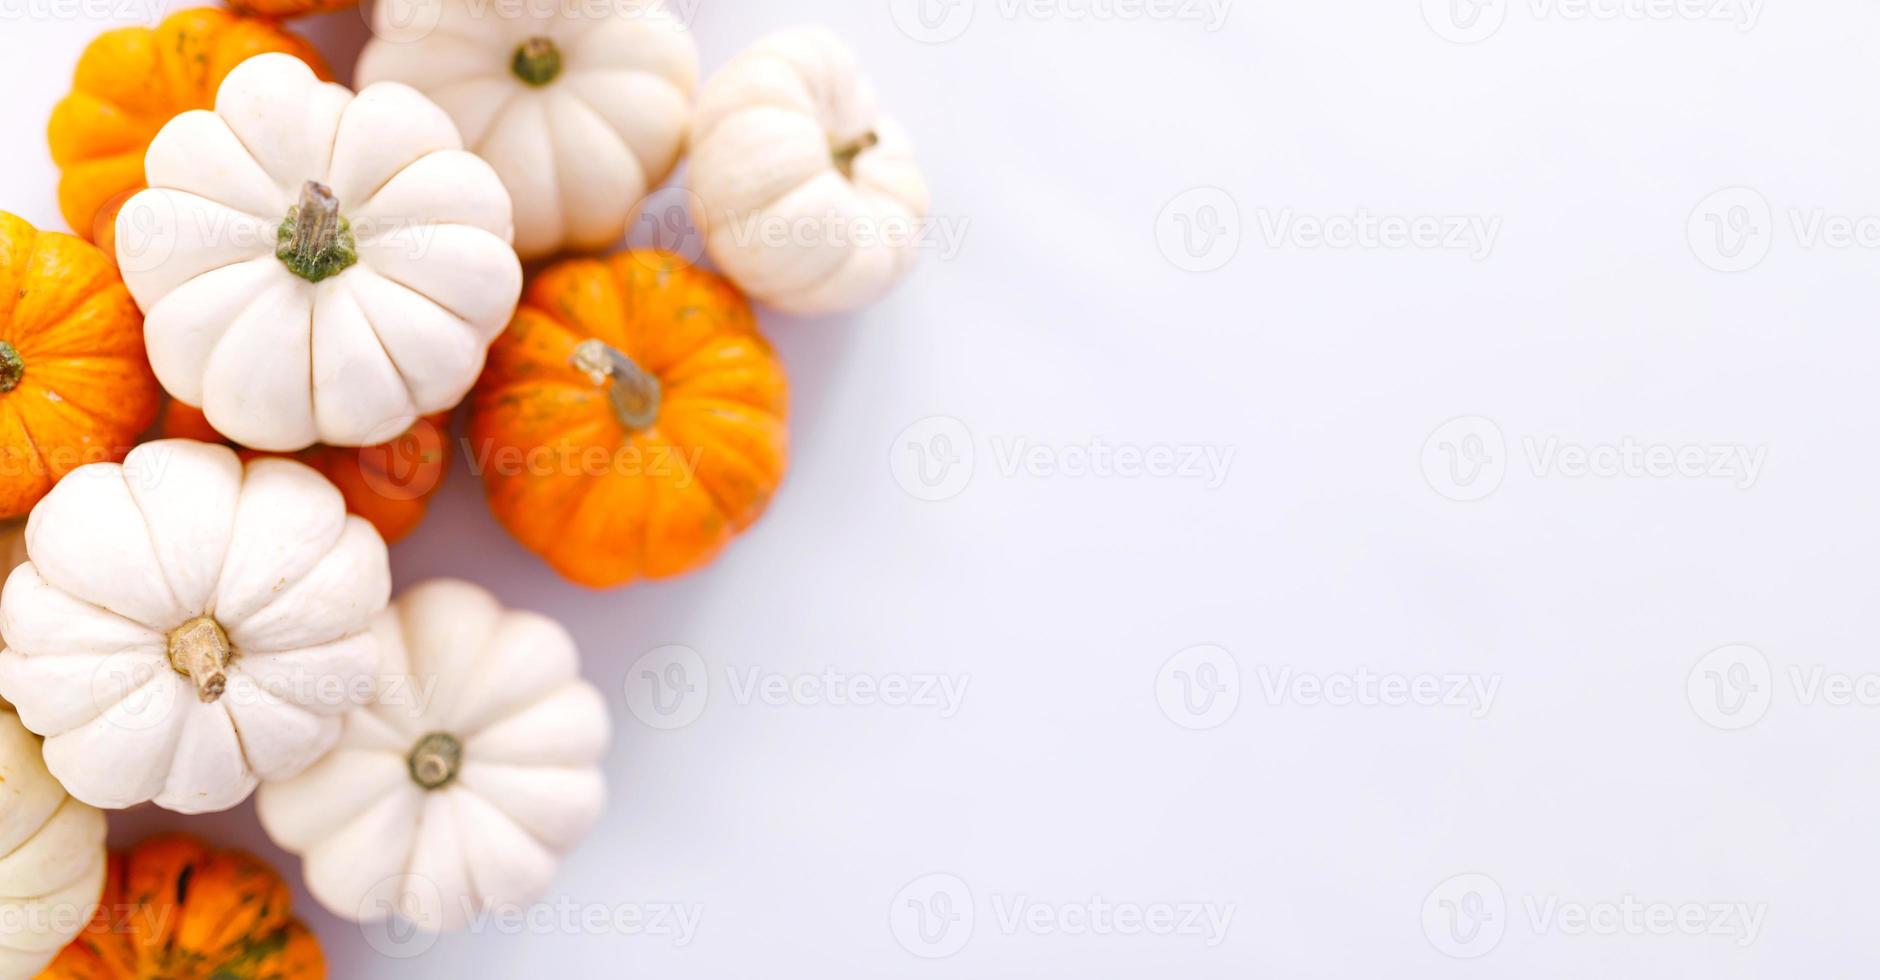 decoração de outono em branco com espaço de cópia. outono, dia das bruxas, ação de graças foto